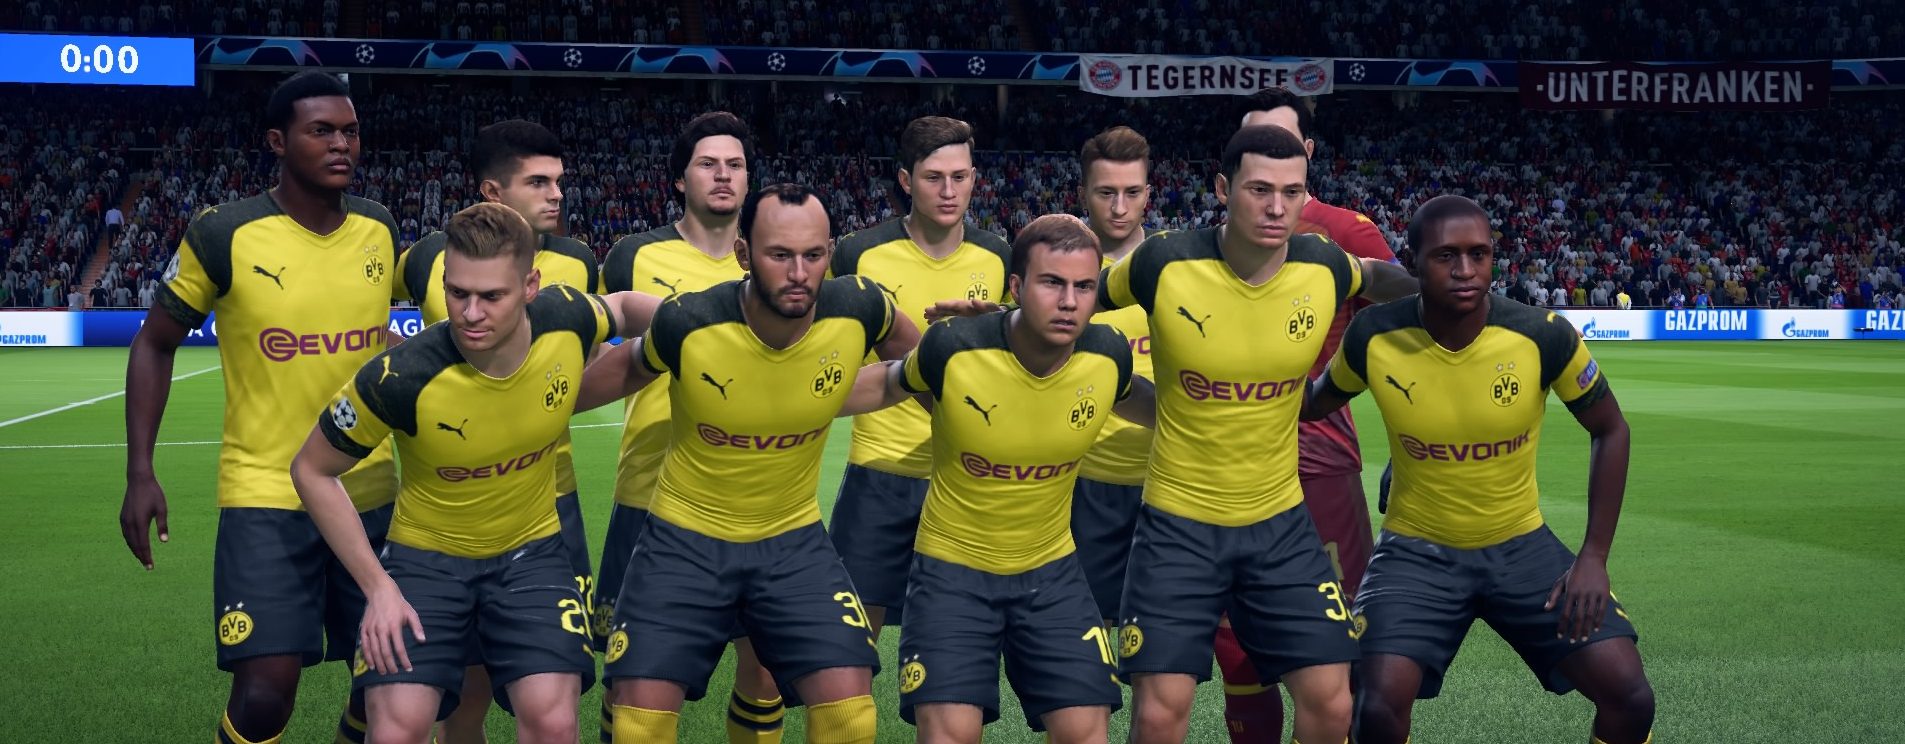 FIFA 19 TOTW 32: Die Predictions zum Team der Woche – mit Reus